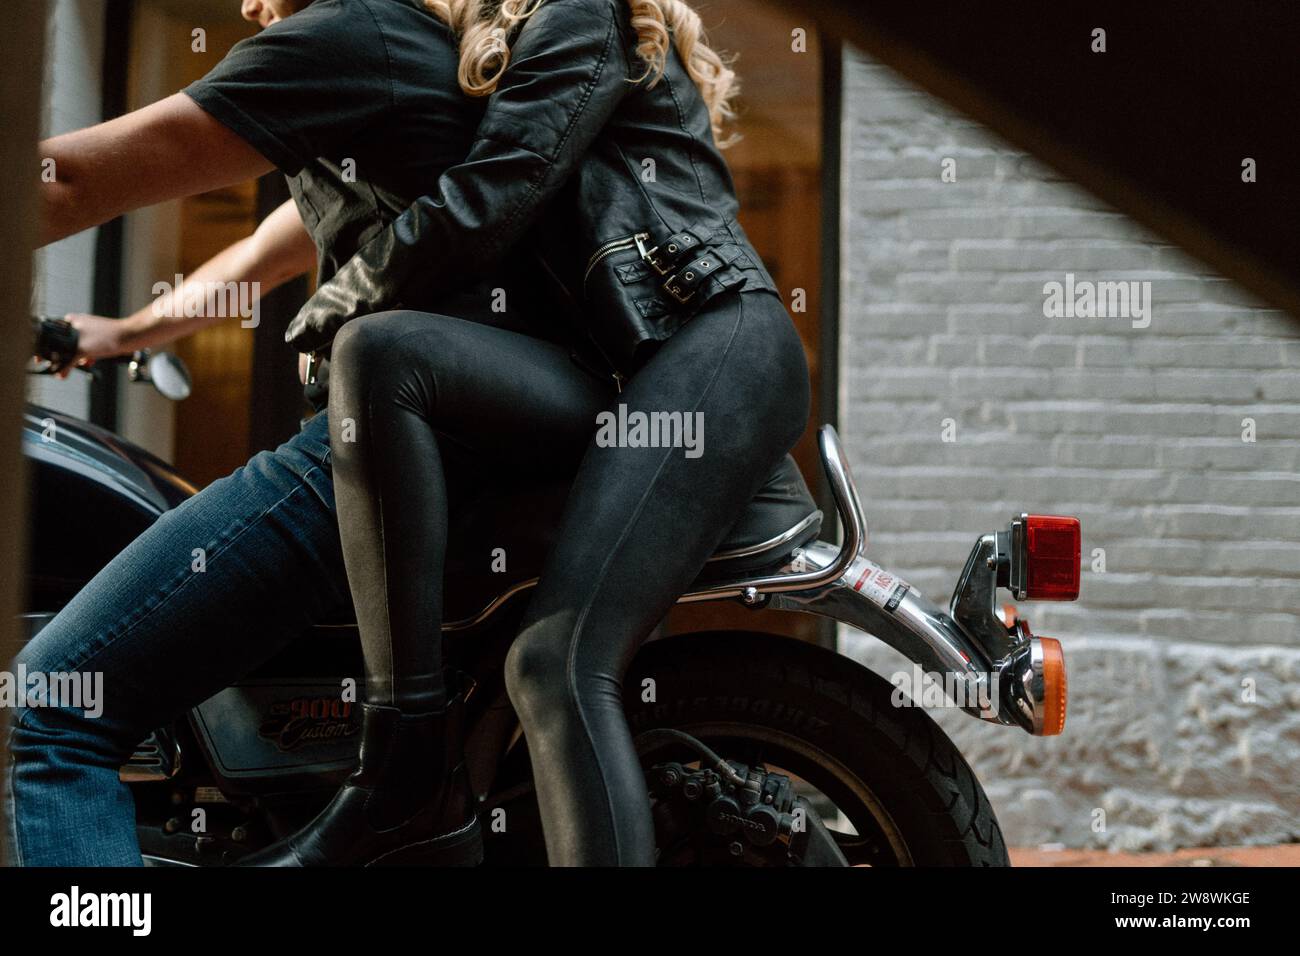 Ein Paar, das zusammen mit einem Motorrad in einer Gasse fährt Stockfoto